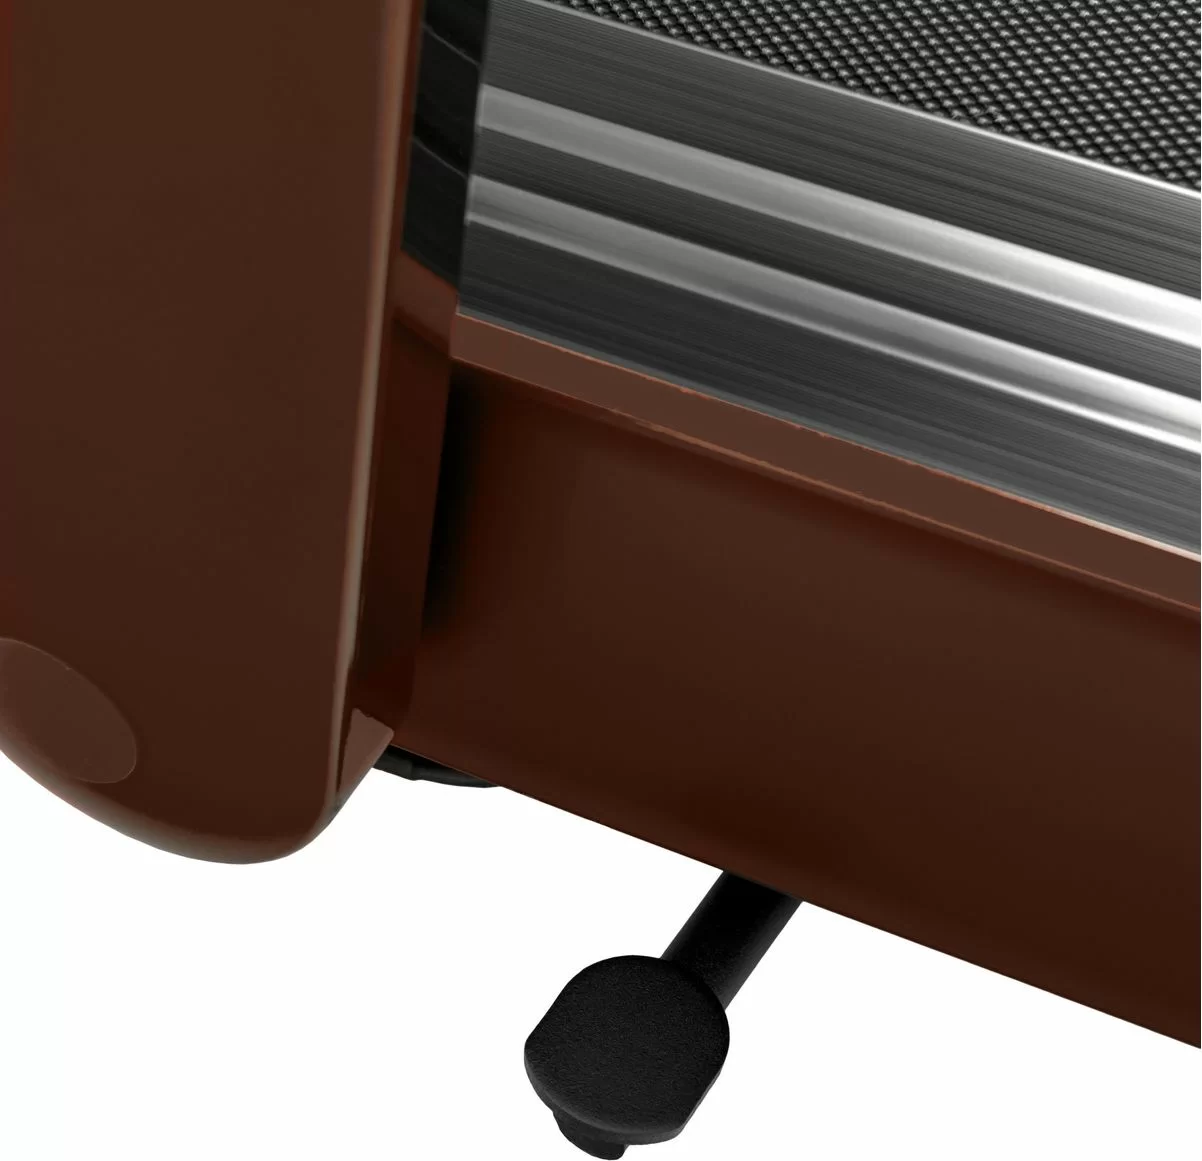 Реальное фото Беговая дорожка Titanium Masters Slimtech S60, коричневая от магазина СпортСЕ